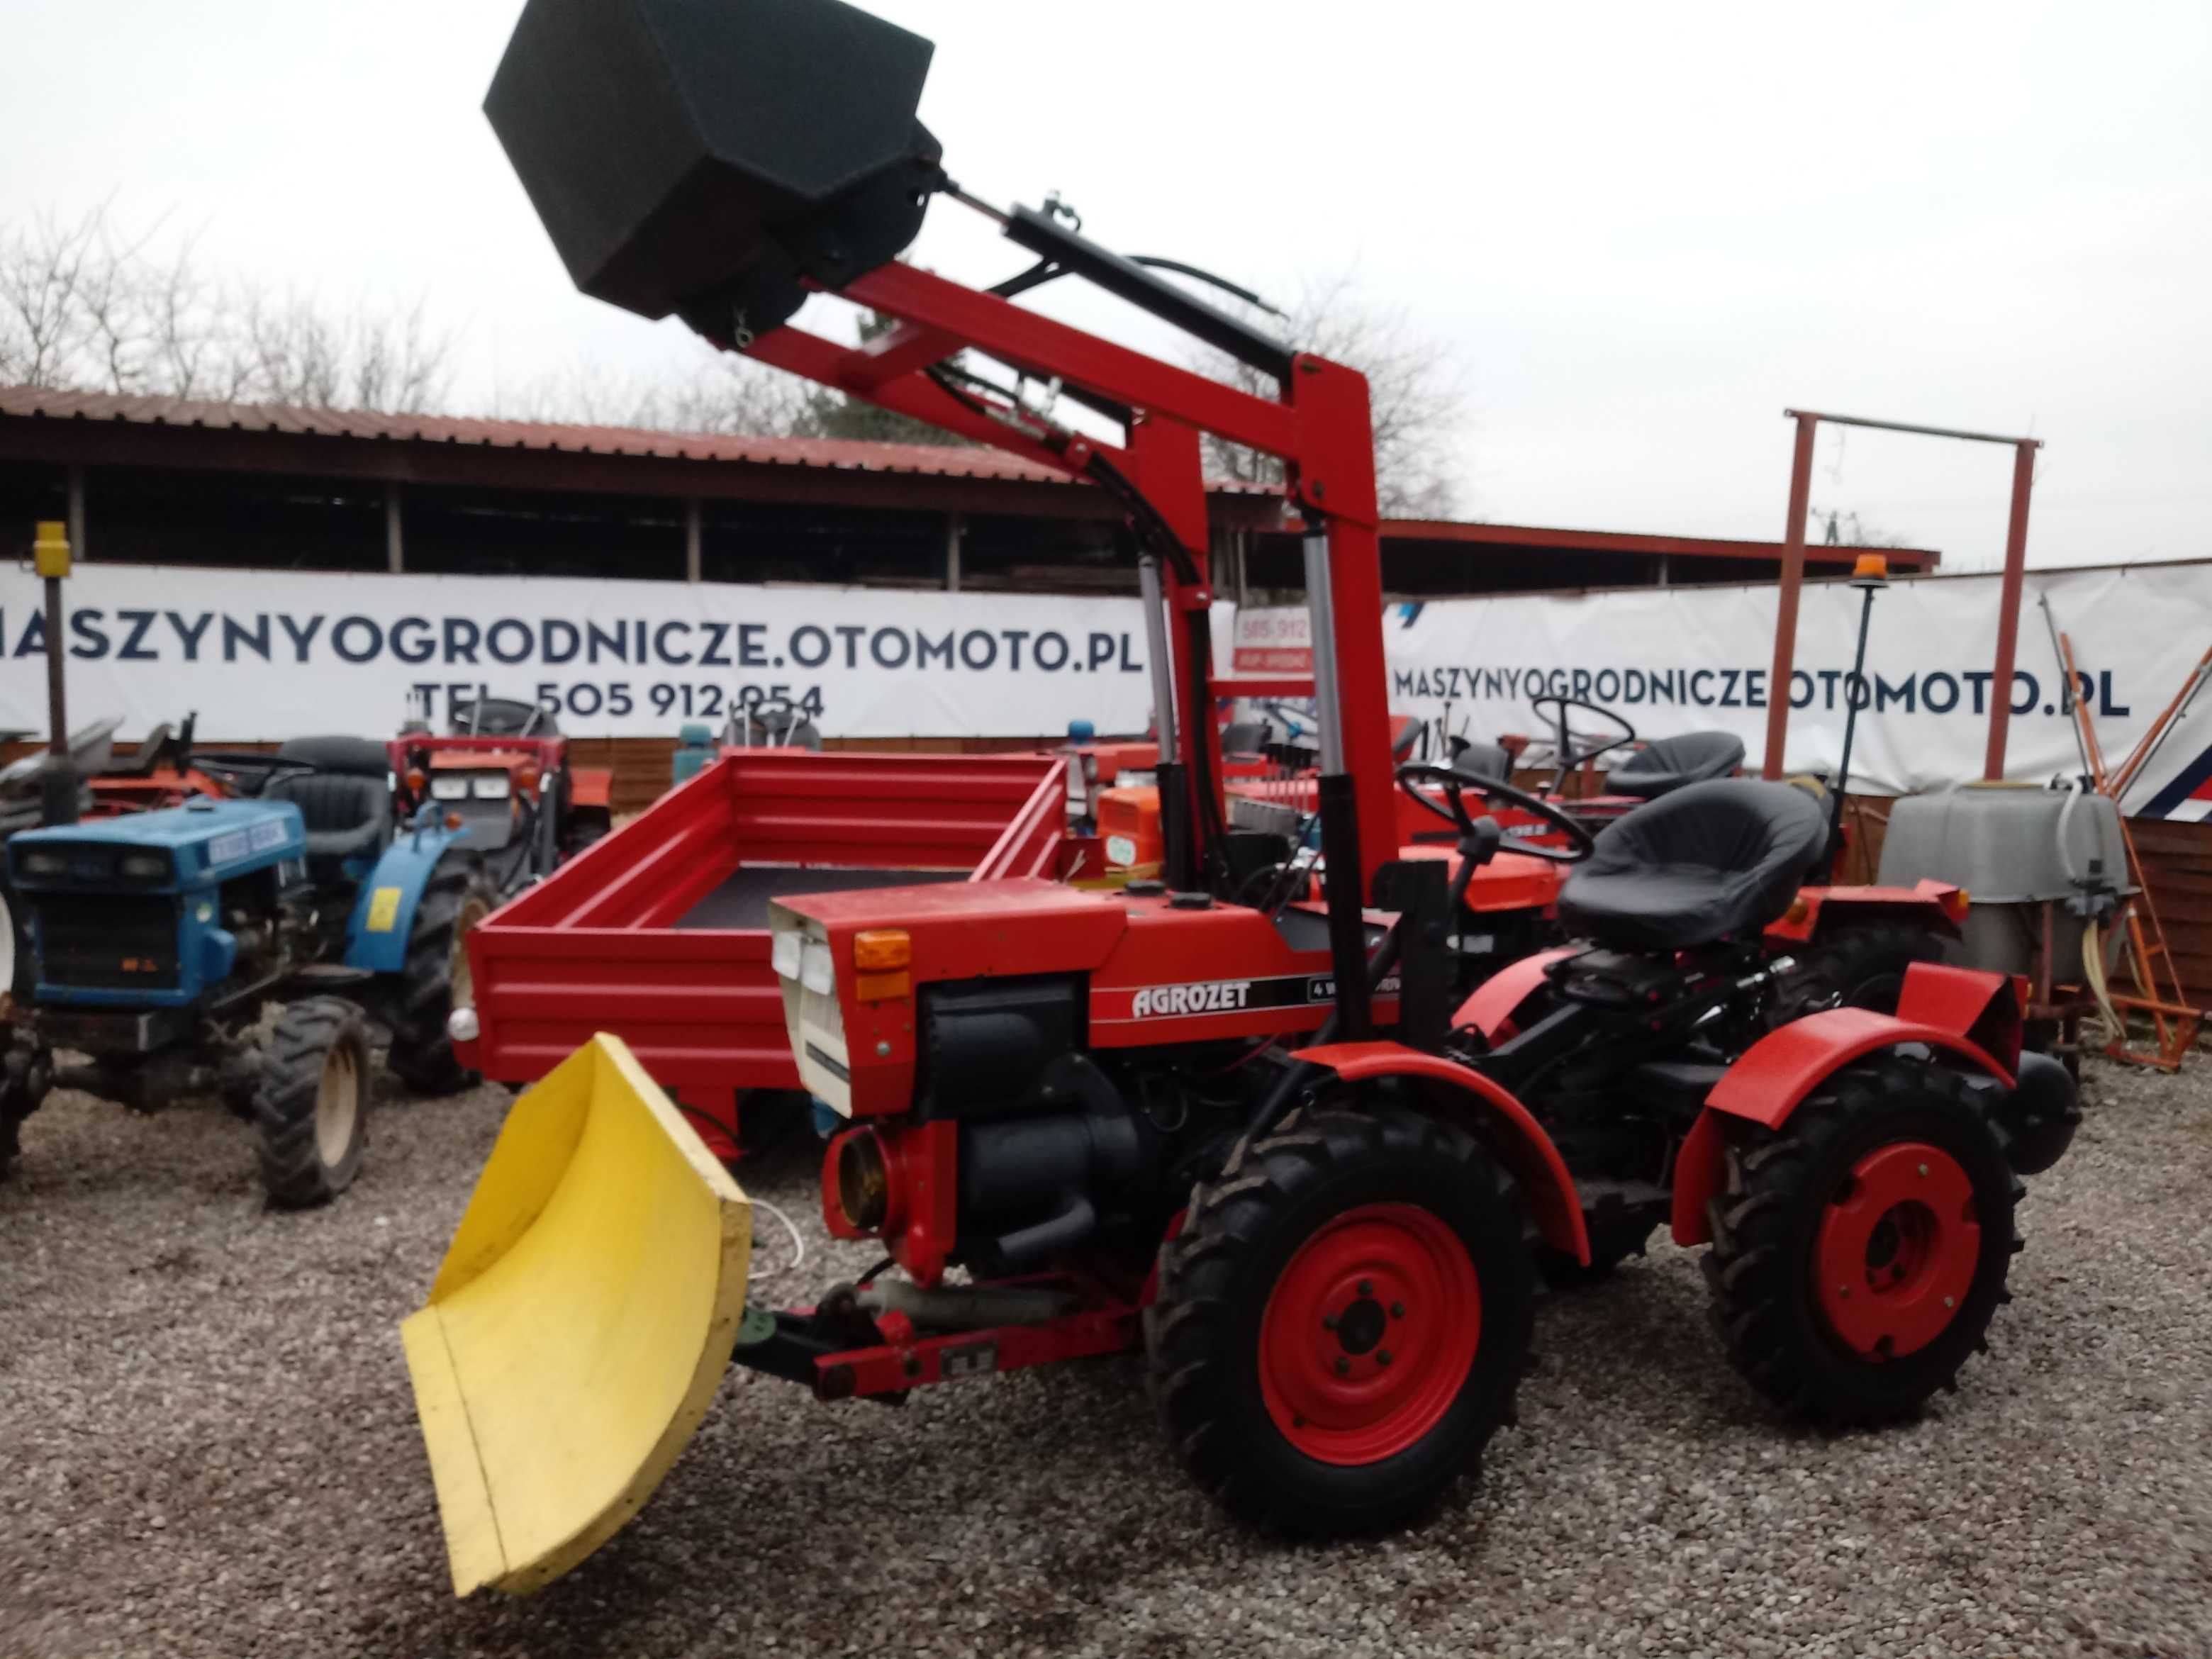 TZ-4K-14 traktorek KOMUNALNY TV-521 4x4 ogrodniczy ODŚNIEŻANIE zima